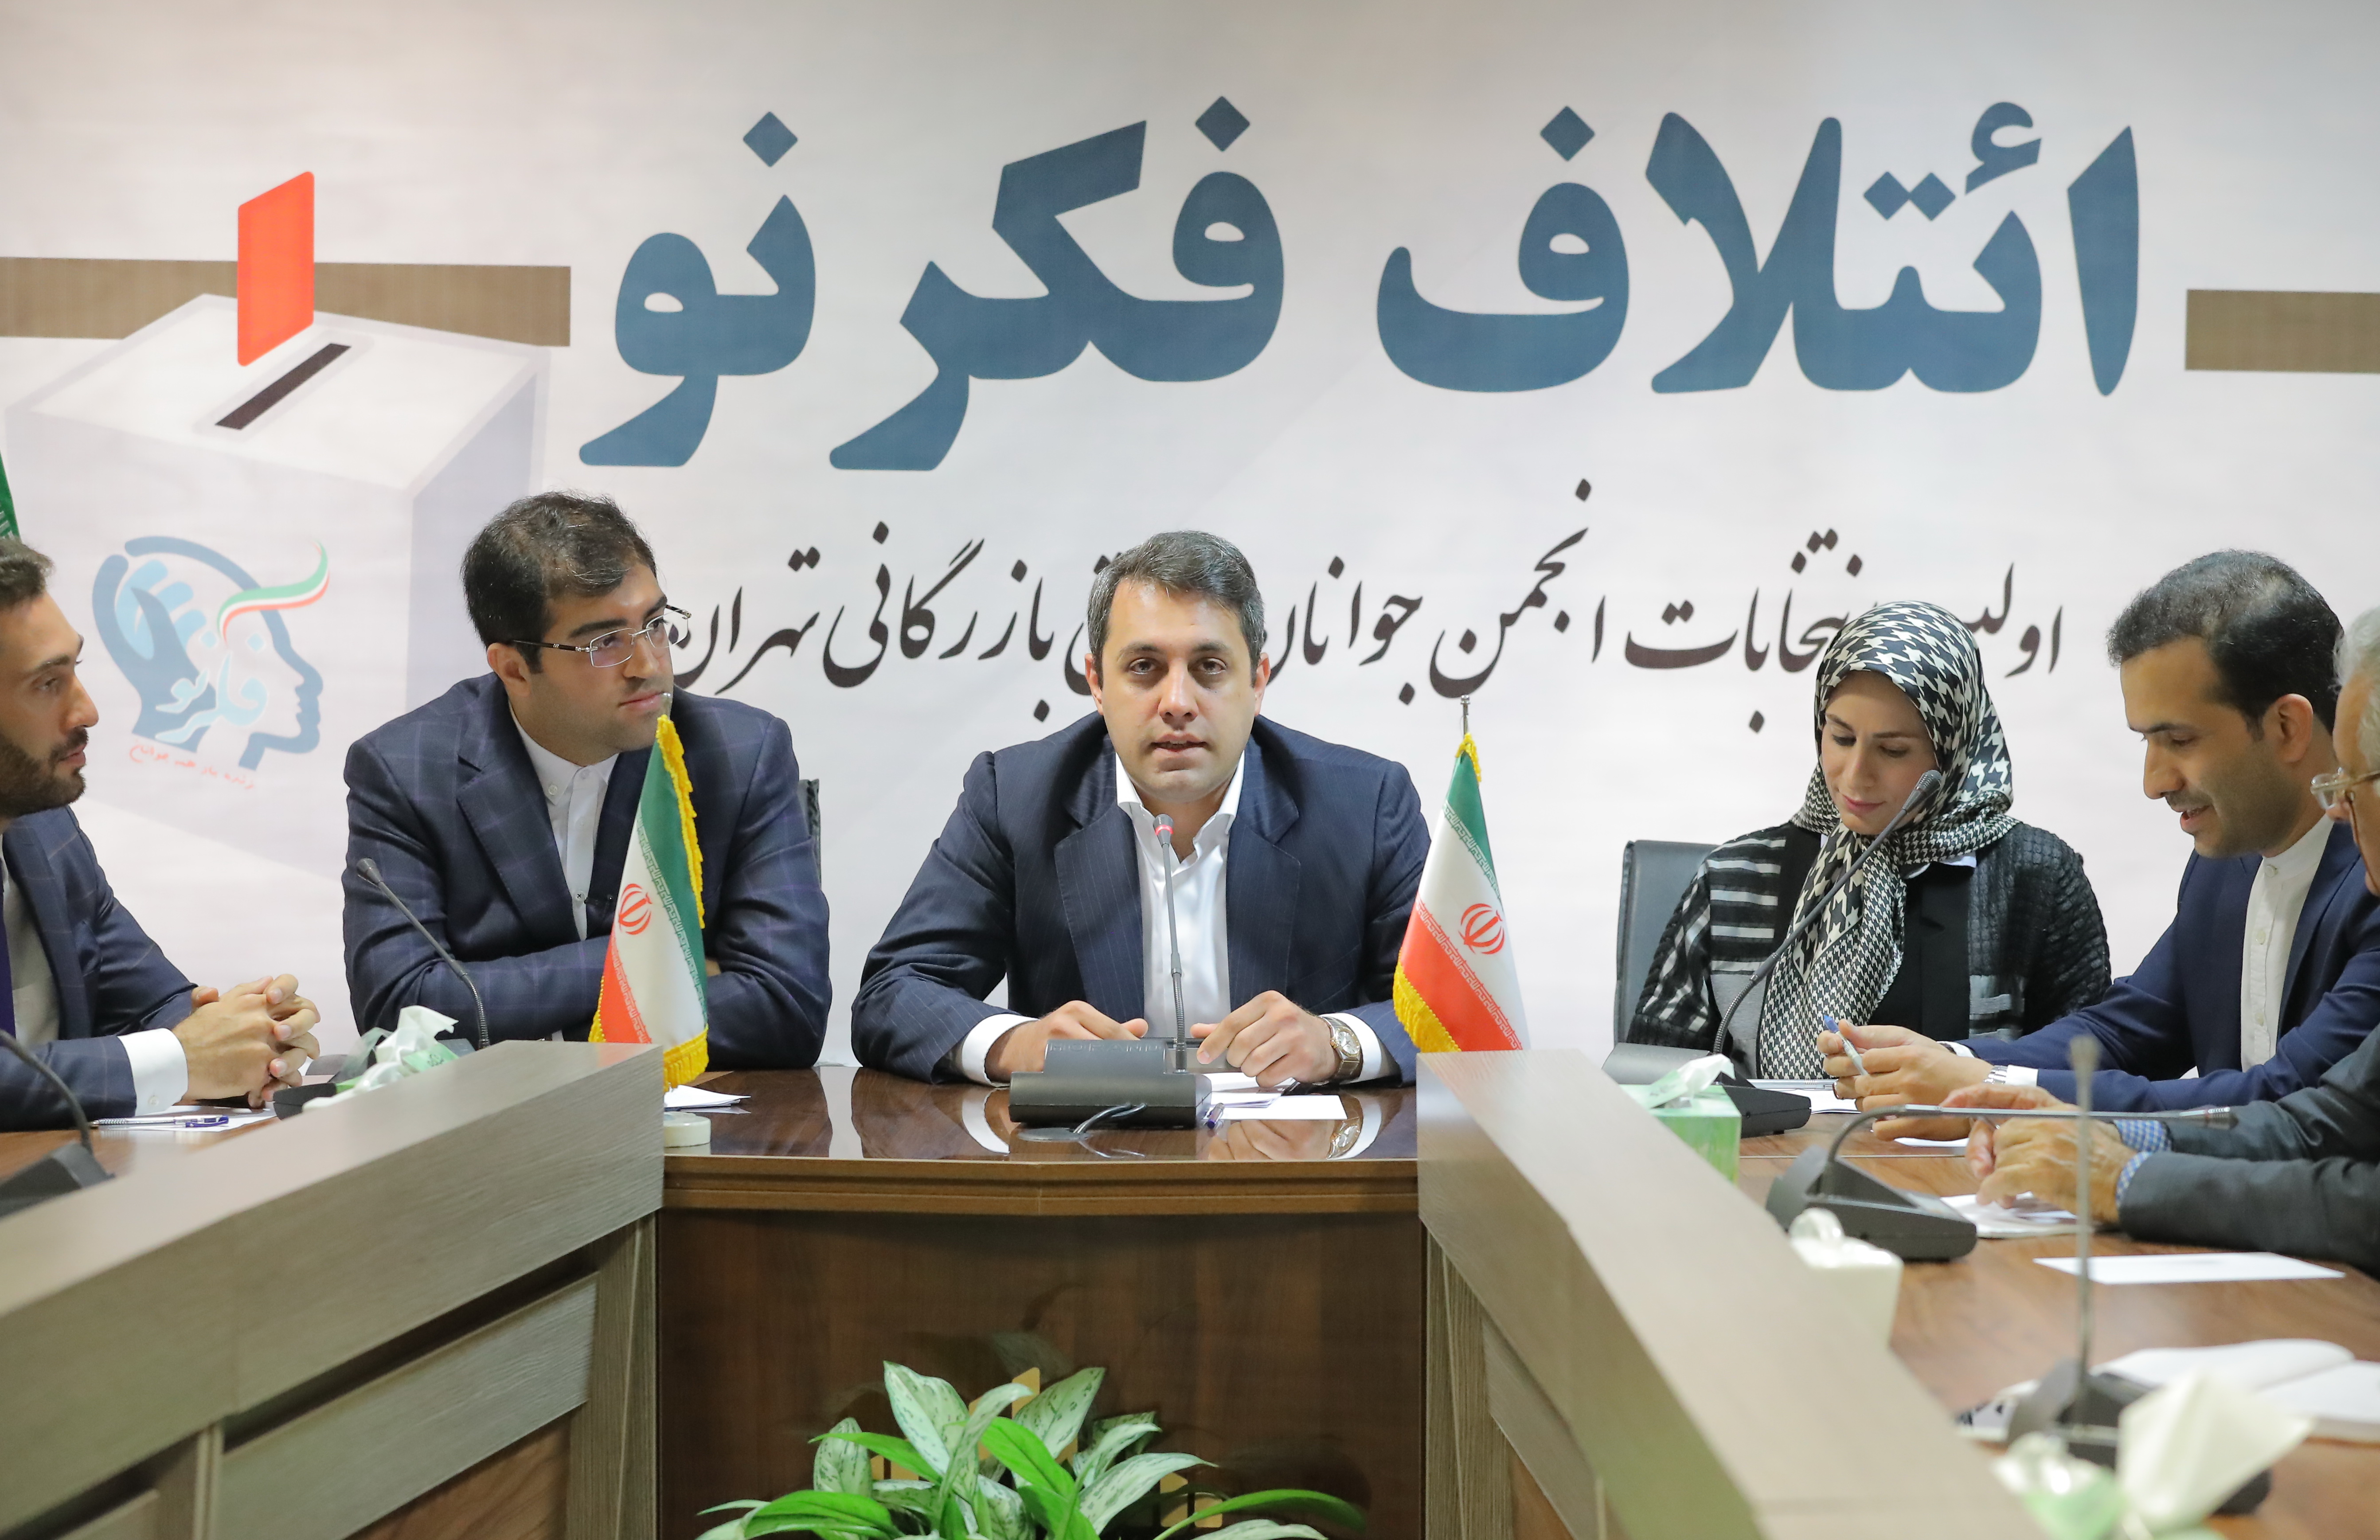 لزوم تشکیل انجمن جوانان اتاق بازرگانی تهران در سال حمایت از تولید و کالای ایرانی (+فیلم)